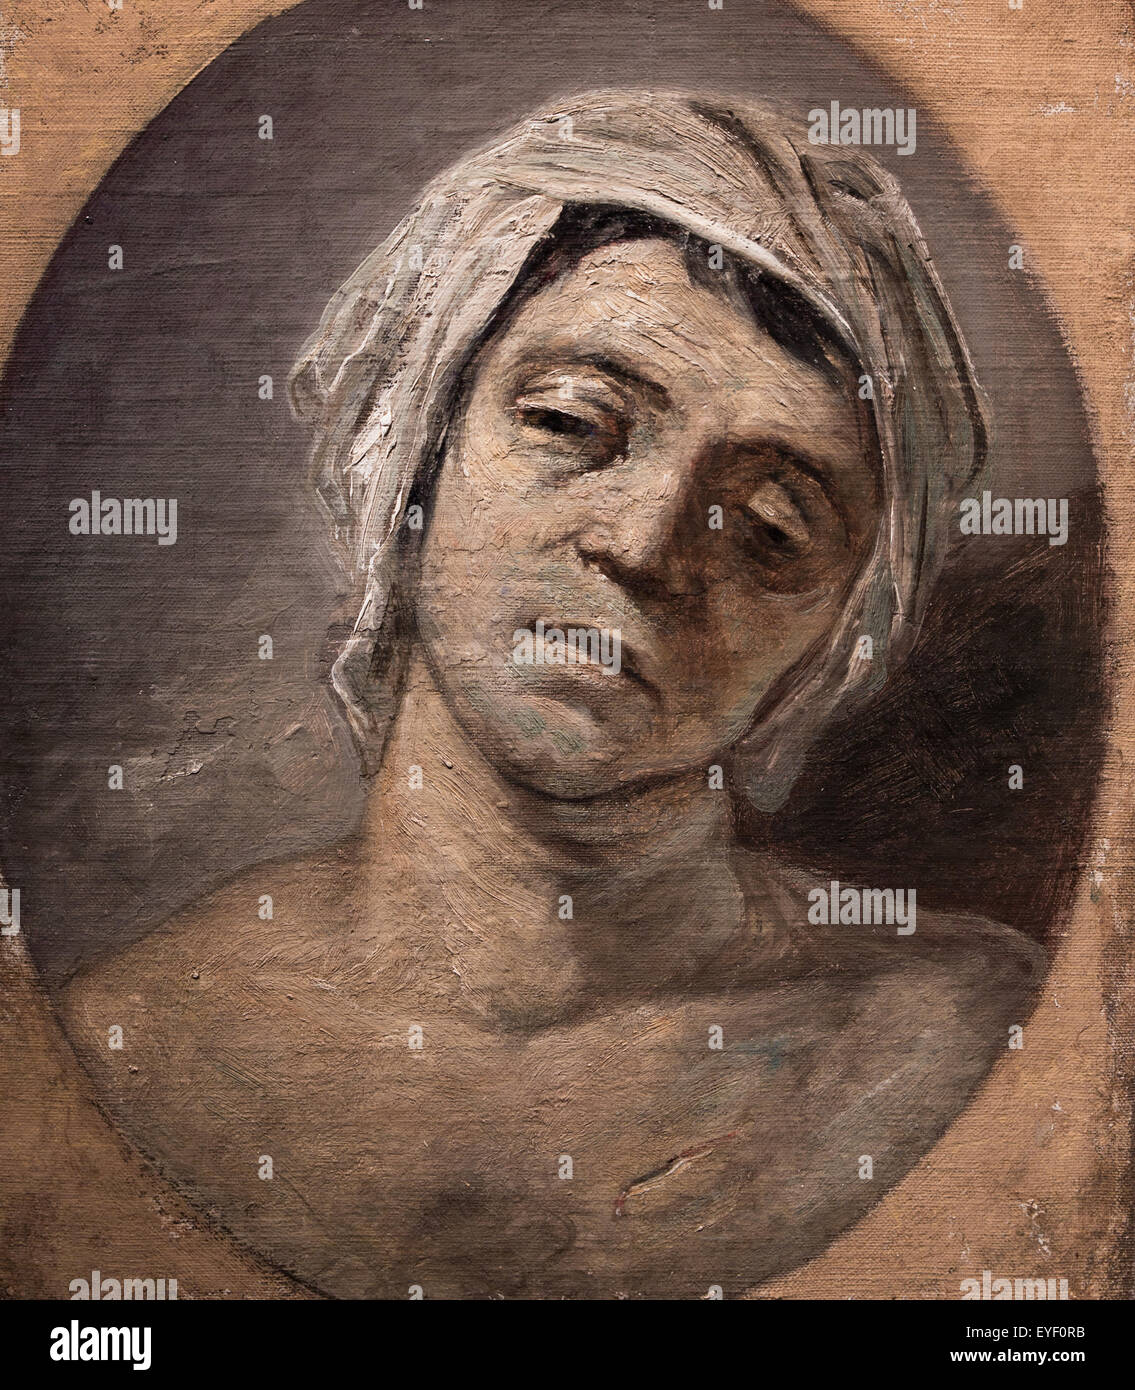 Marat assasined copia anterior, en sentido contrario, desde David dibujar conservado en el Museo de Versalles 17/10/2013 - Colección del siglo XVIII. Foto de stock